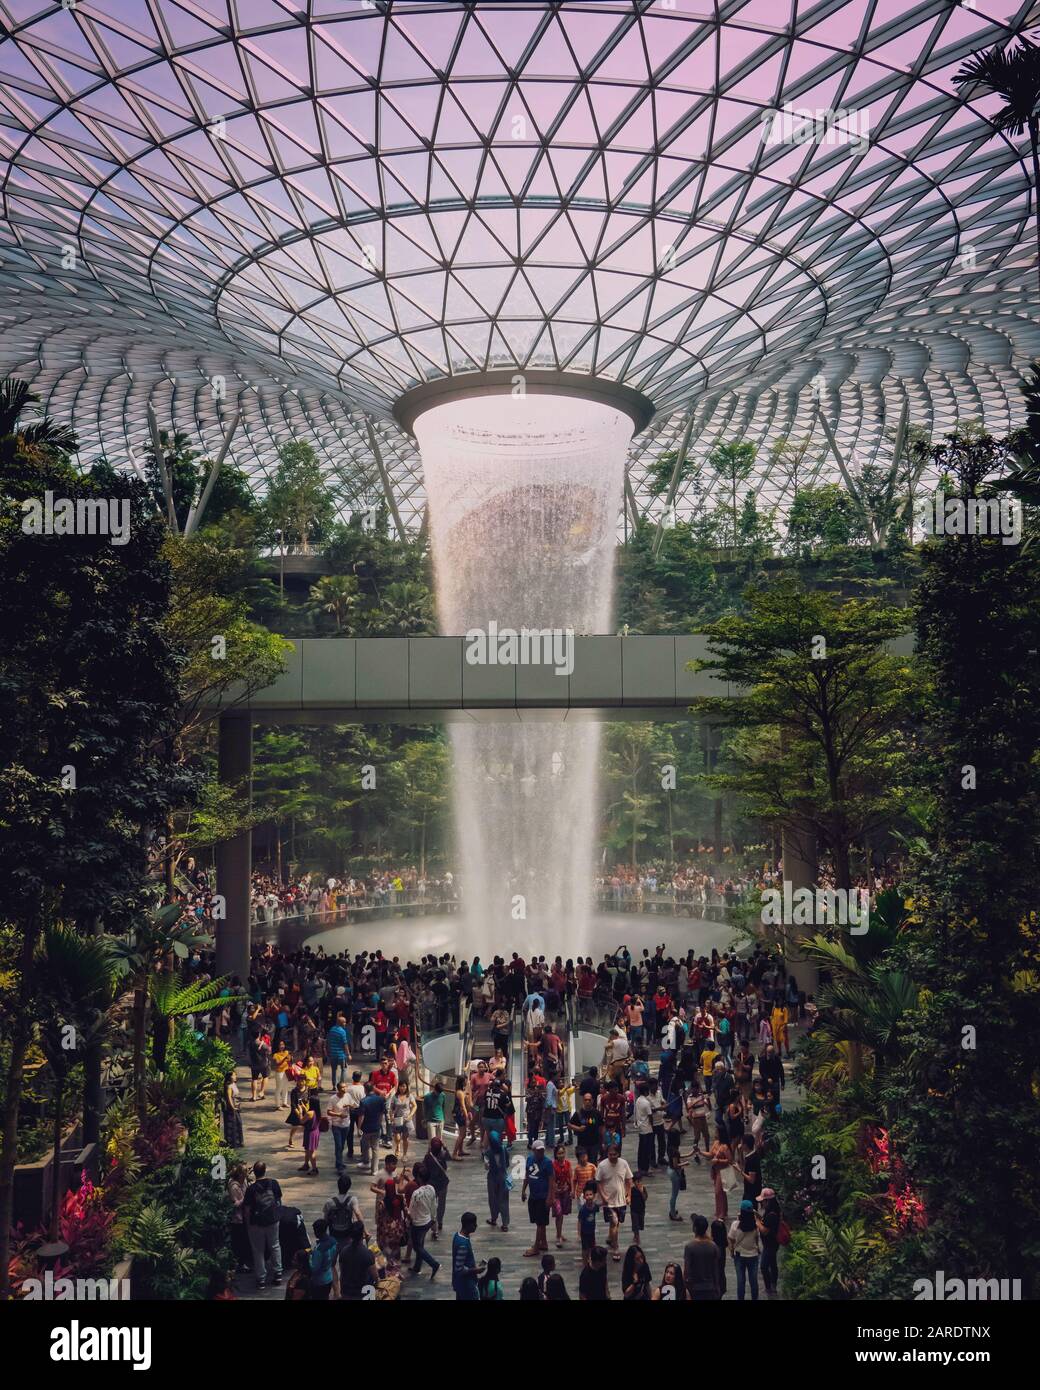 Der Flughafen Jewel Changi ist eine Mischnutzung am Flughafen Changi. Das Herzstück ist der höchste Wasserfall der Welt, der den Namen "Rain Vortex" trägt Stockfoto